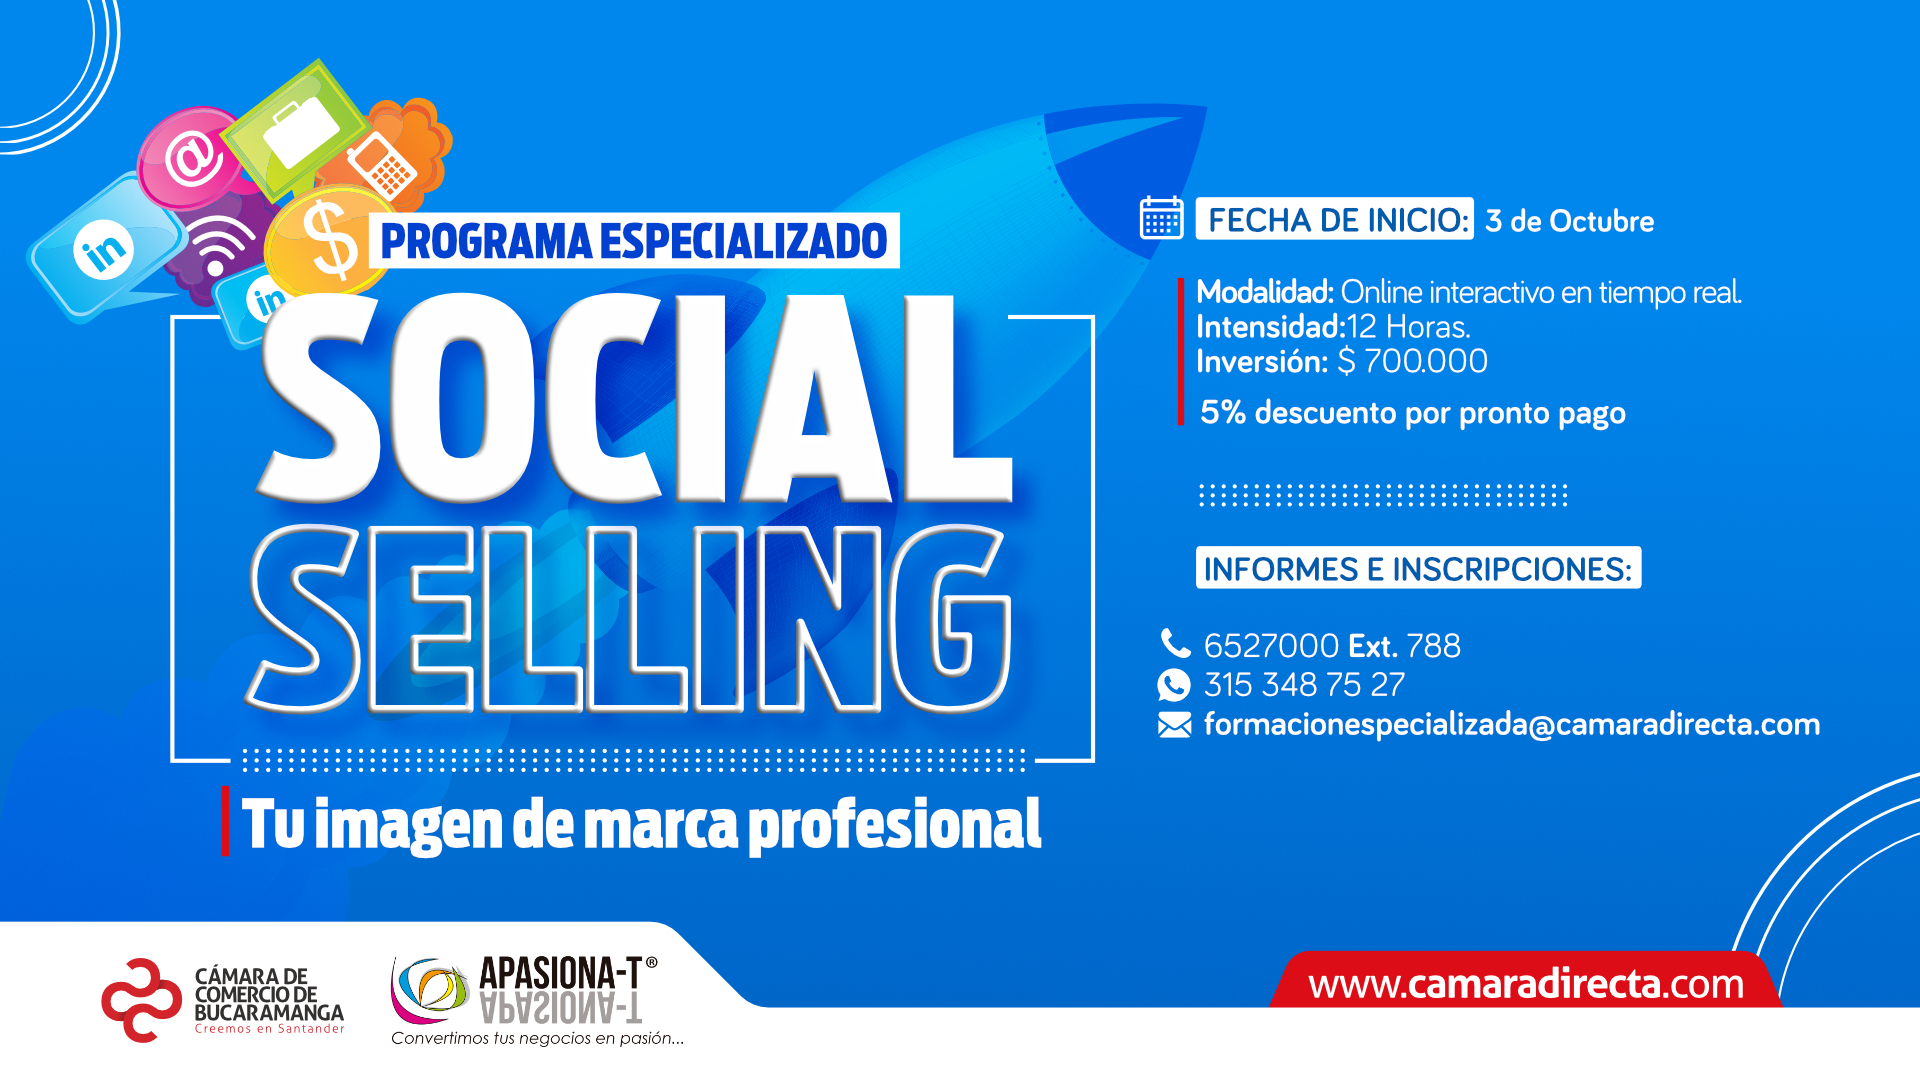 Programa especializado SOCIAL SELLING  La nueva forma de vender entre las empresas a través de las redes sociales